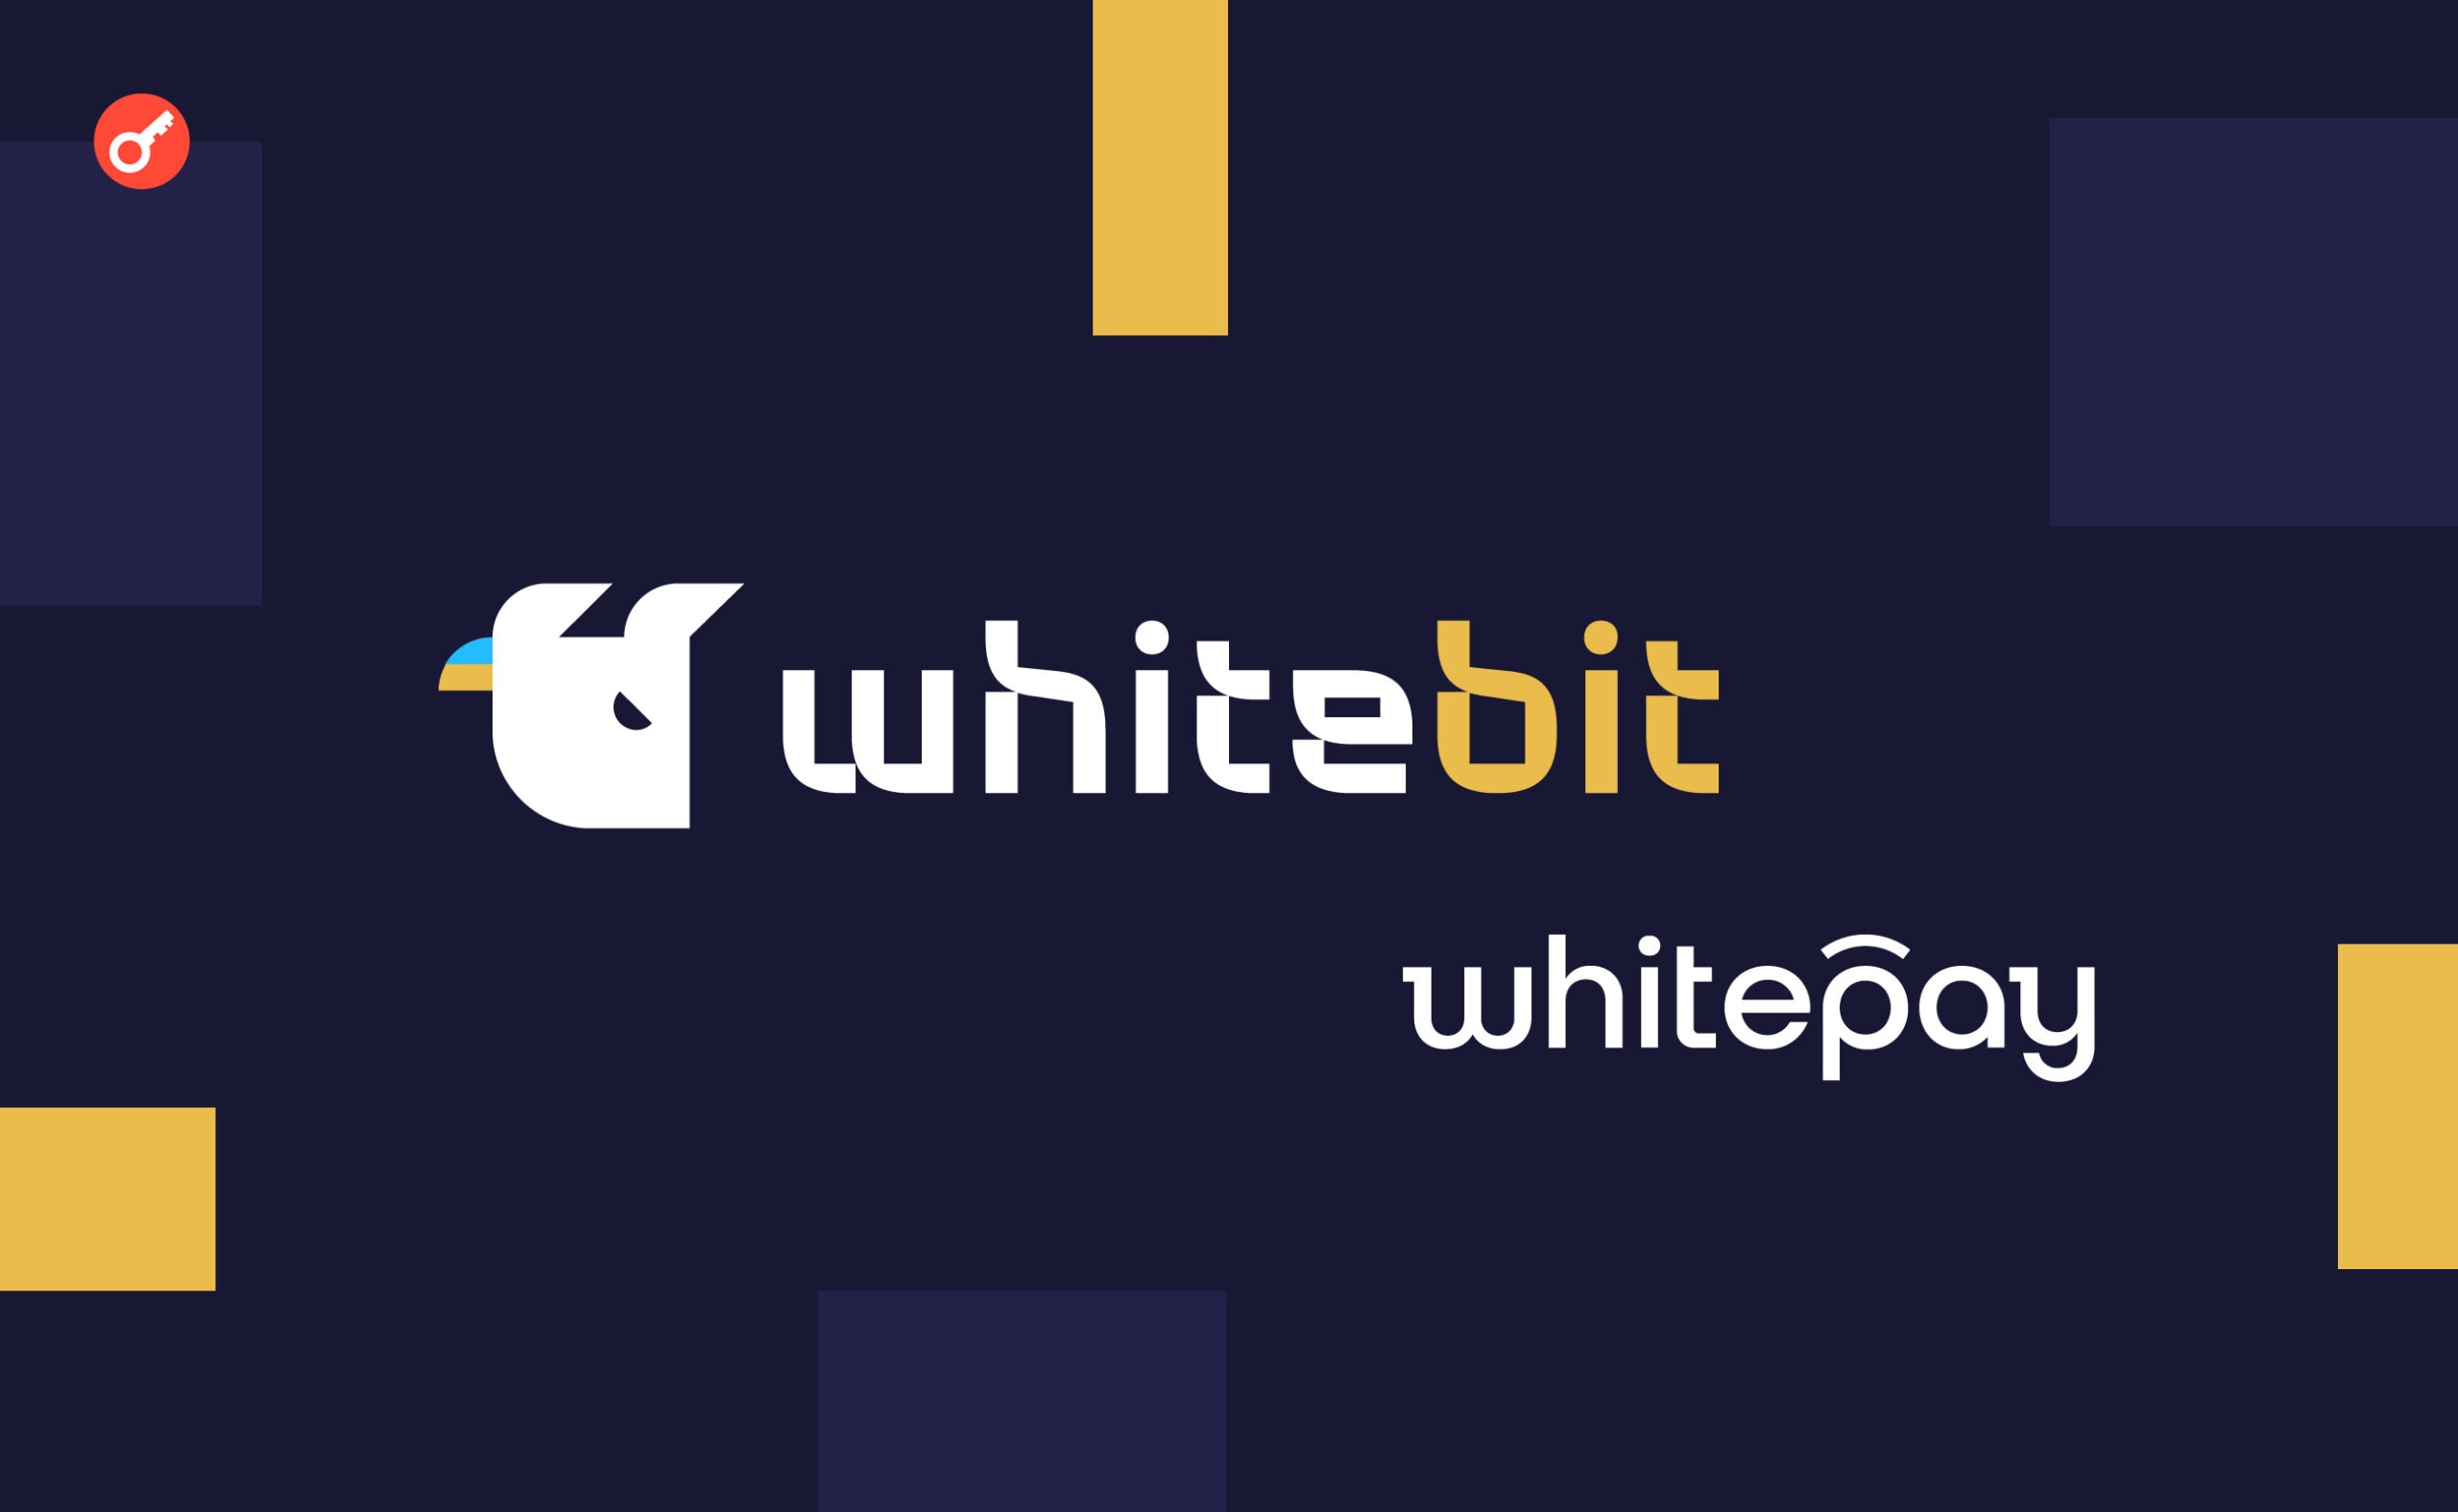 WhiteBIT та Whitepay стали партнерами Фундації Дім Рональда МакДональда в Україні. Головний колаж новини.